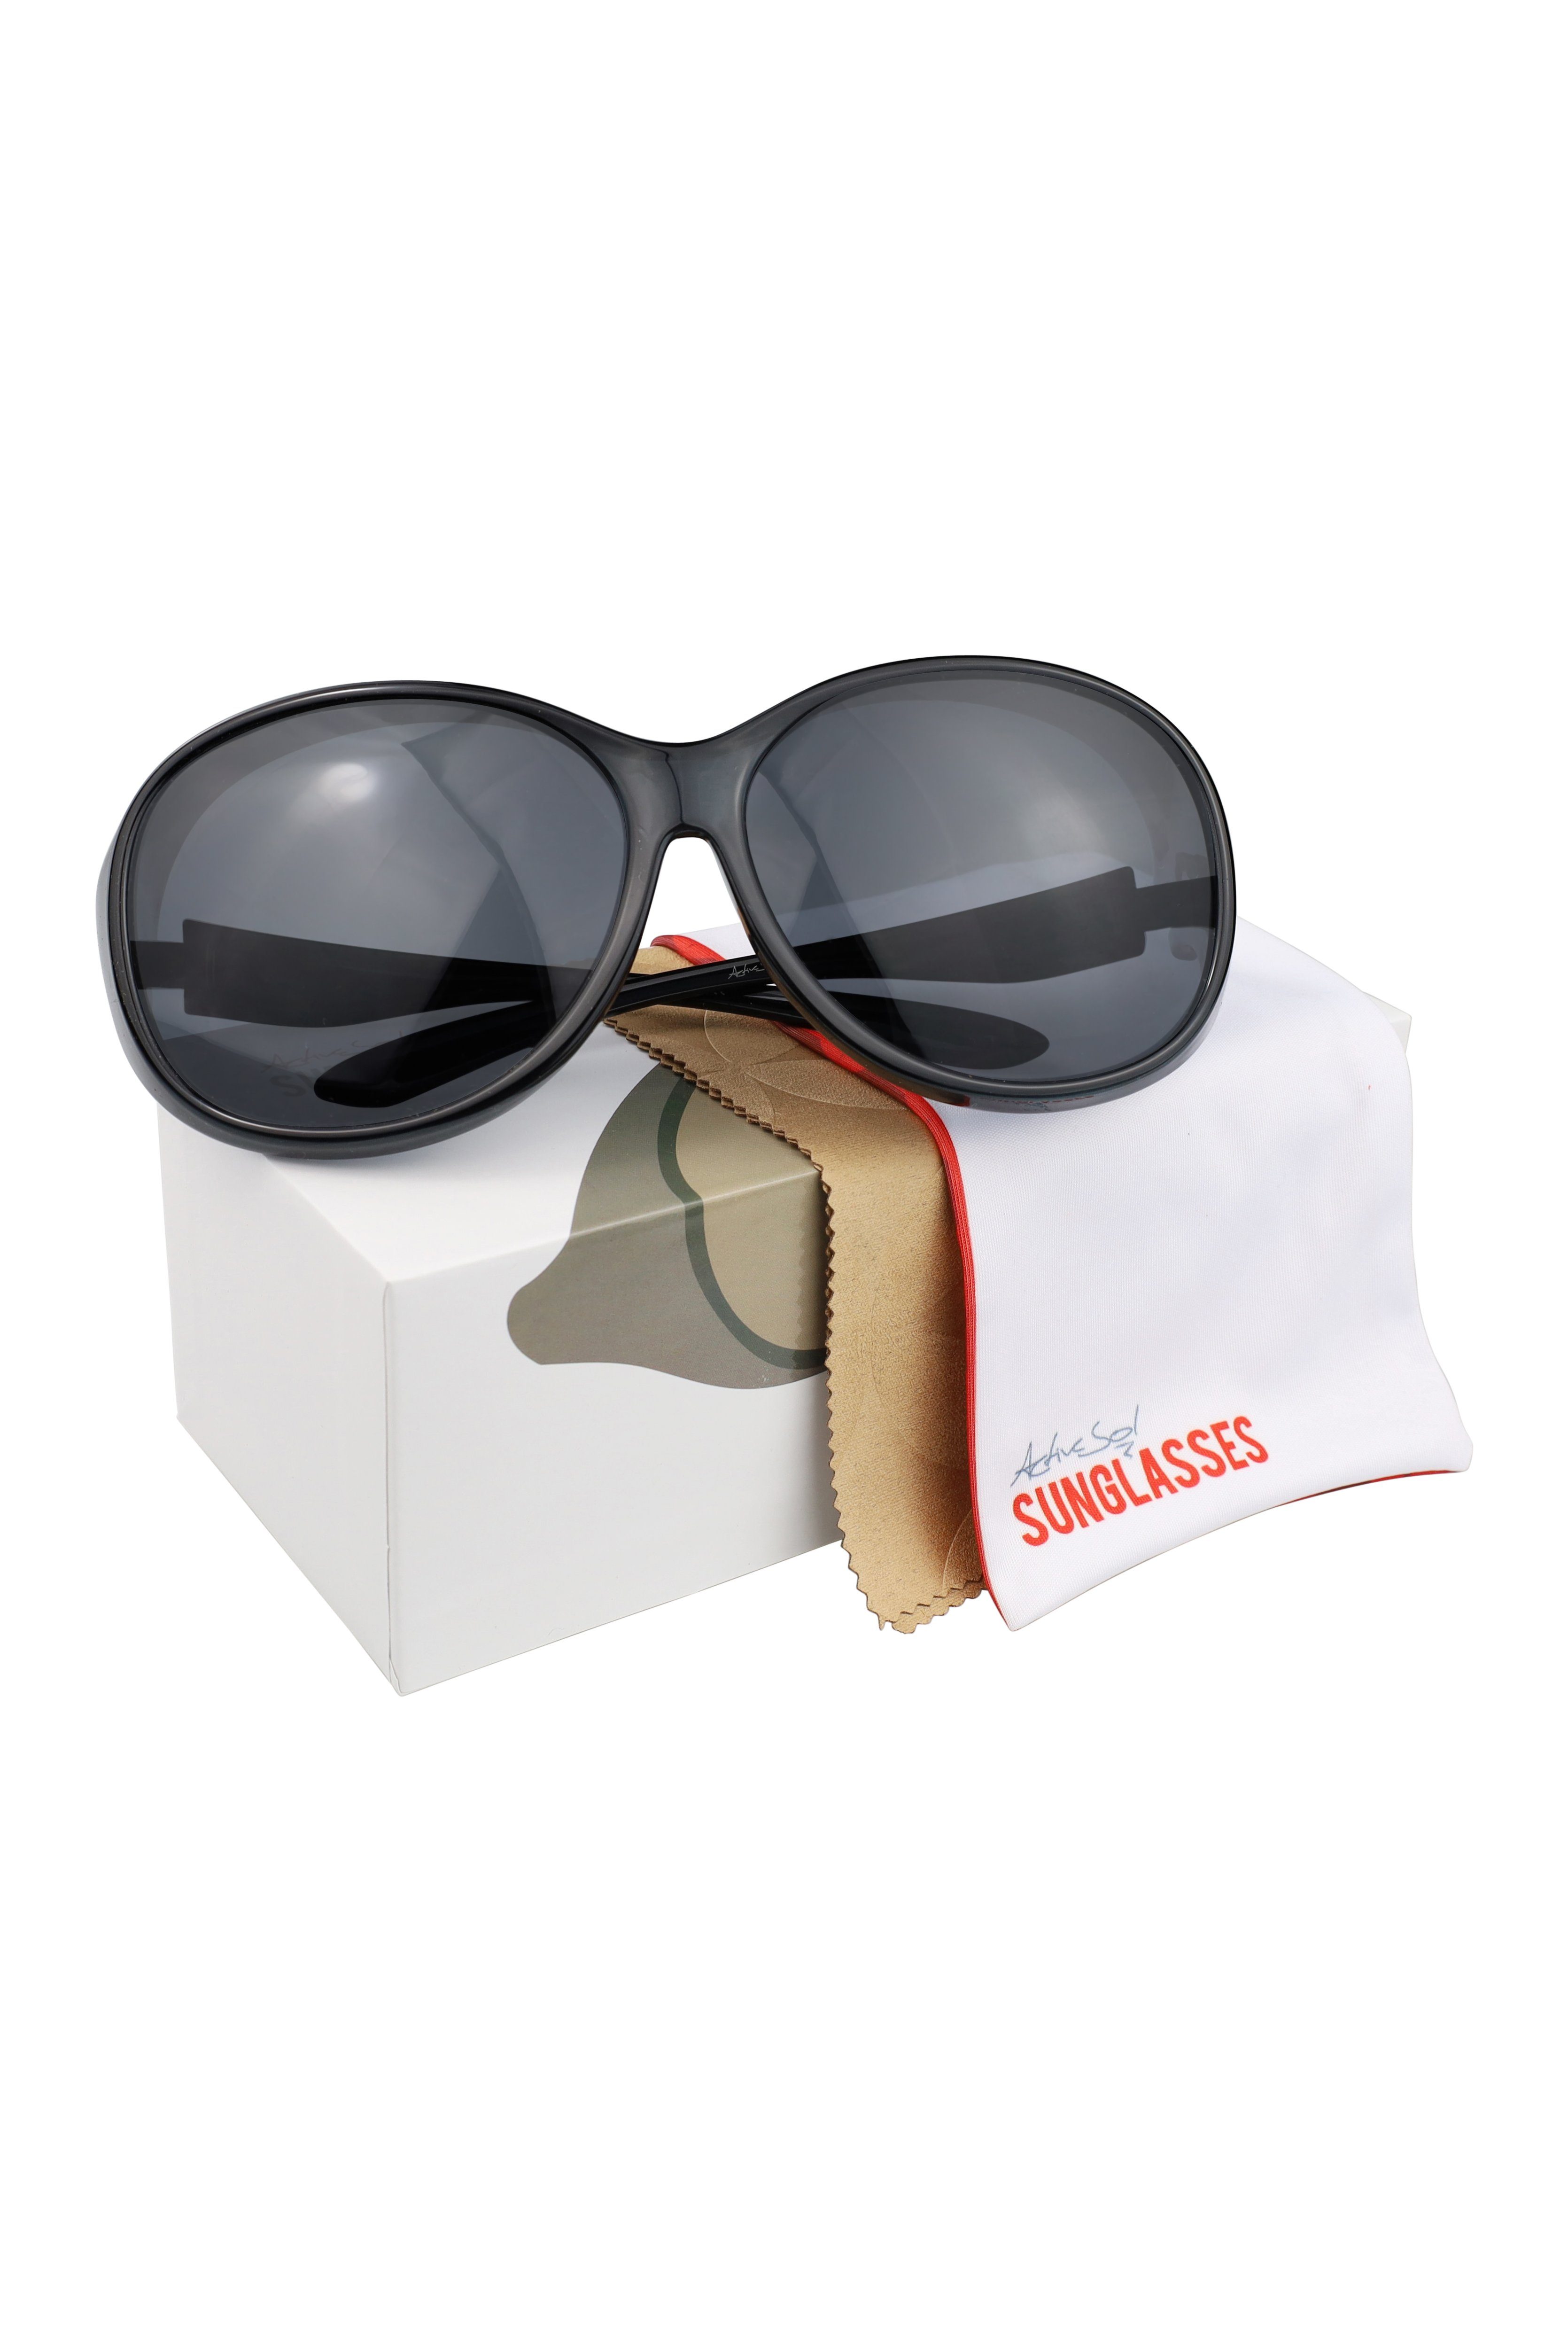 Schiebebox Sonnenbrille SUNGLASSES MEGA Damen Schwarz Brillenputztuch) Überziehsonnenbrille ActiveSol Vintage Stil und (inklusive